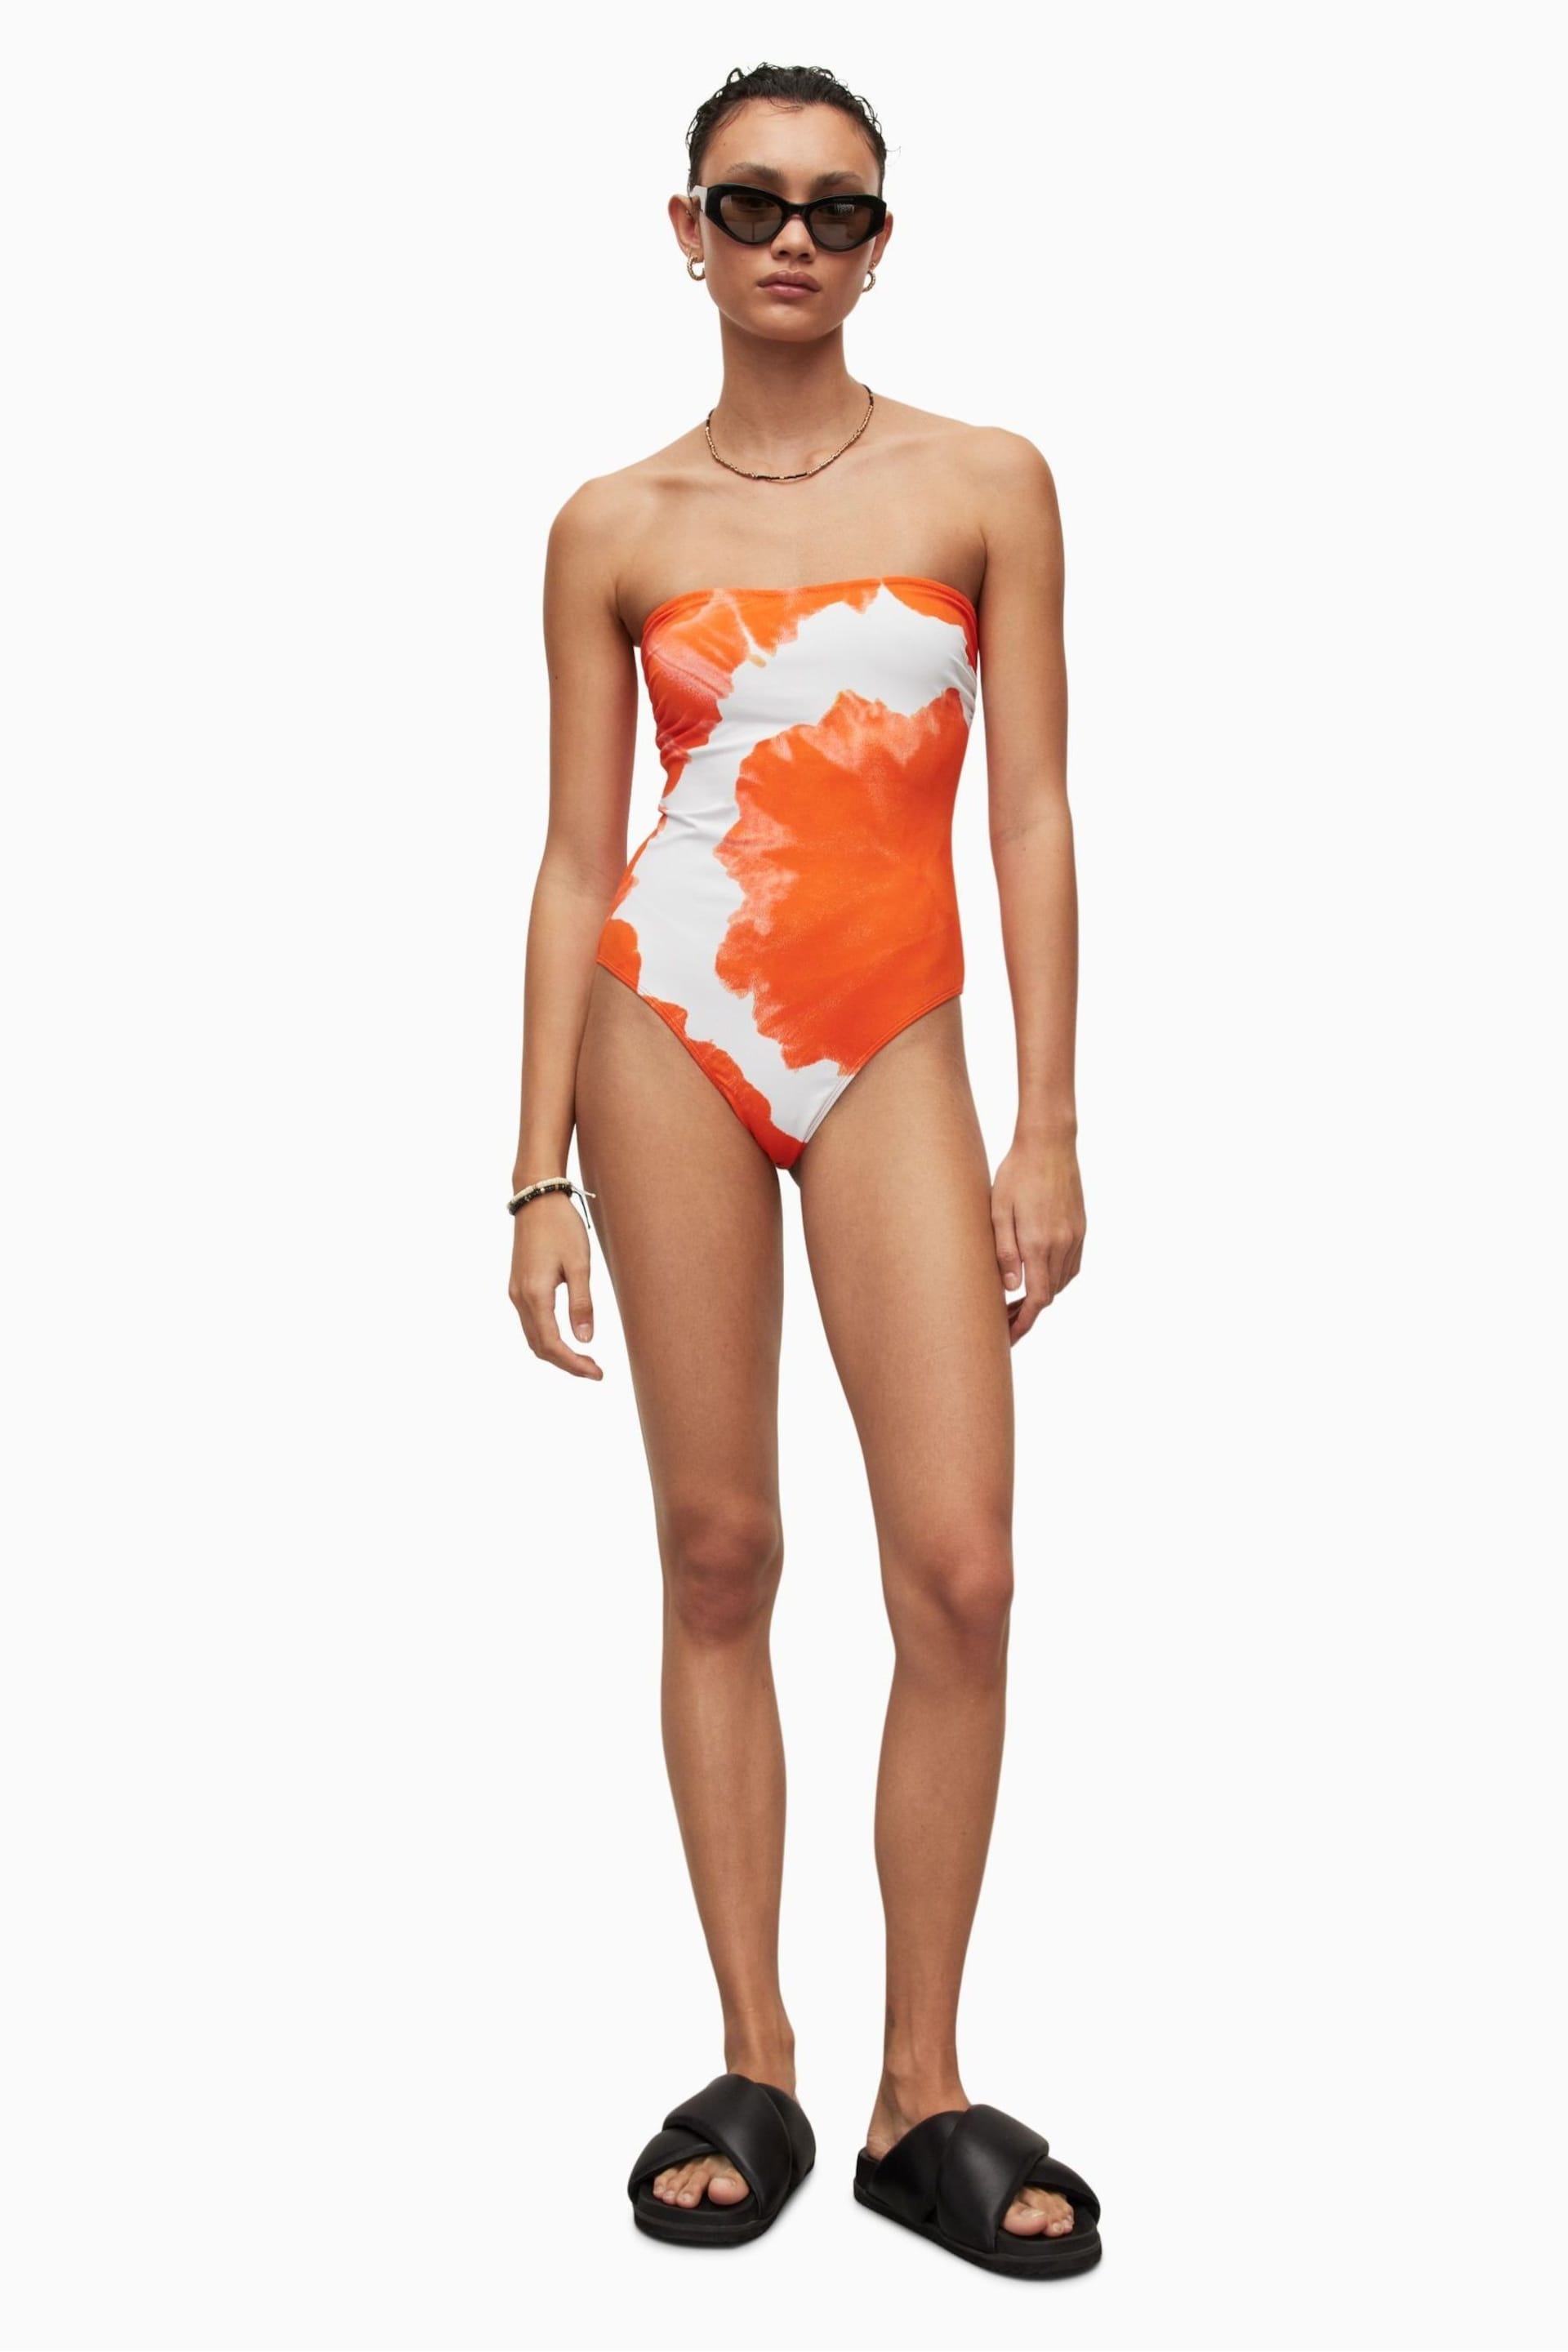 AllSaints Orange Catriona Mariana Swimsuit - Image 4 of 8